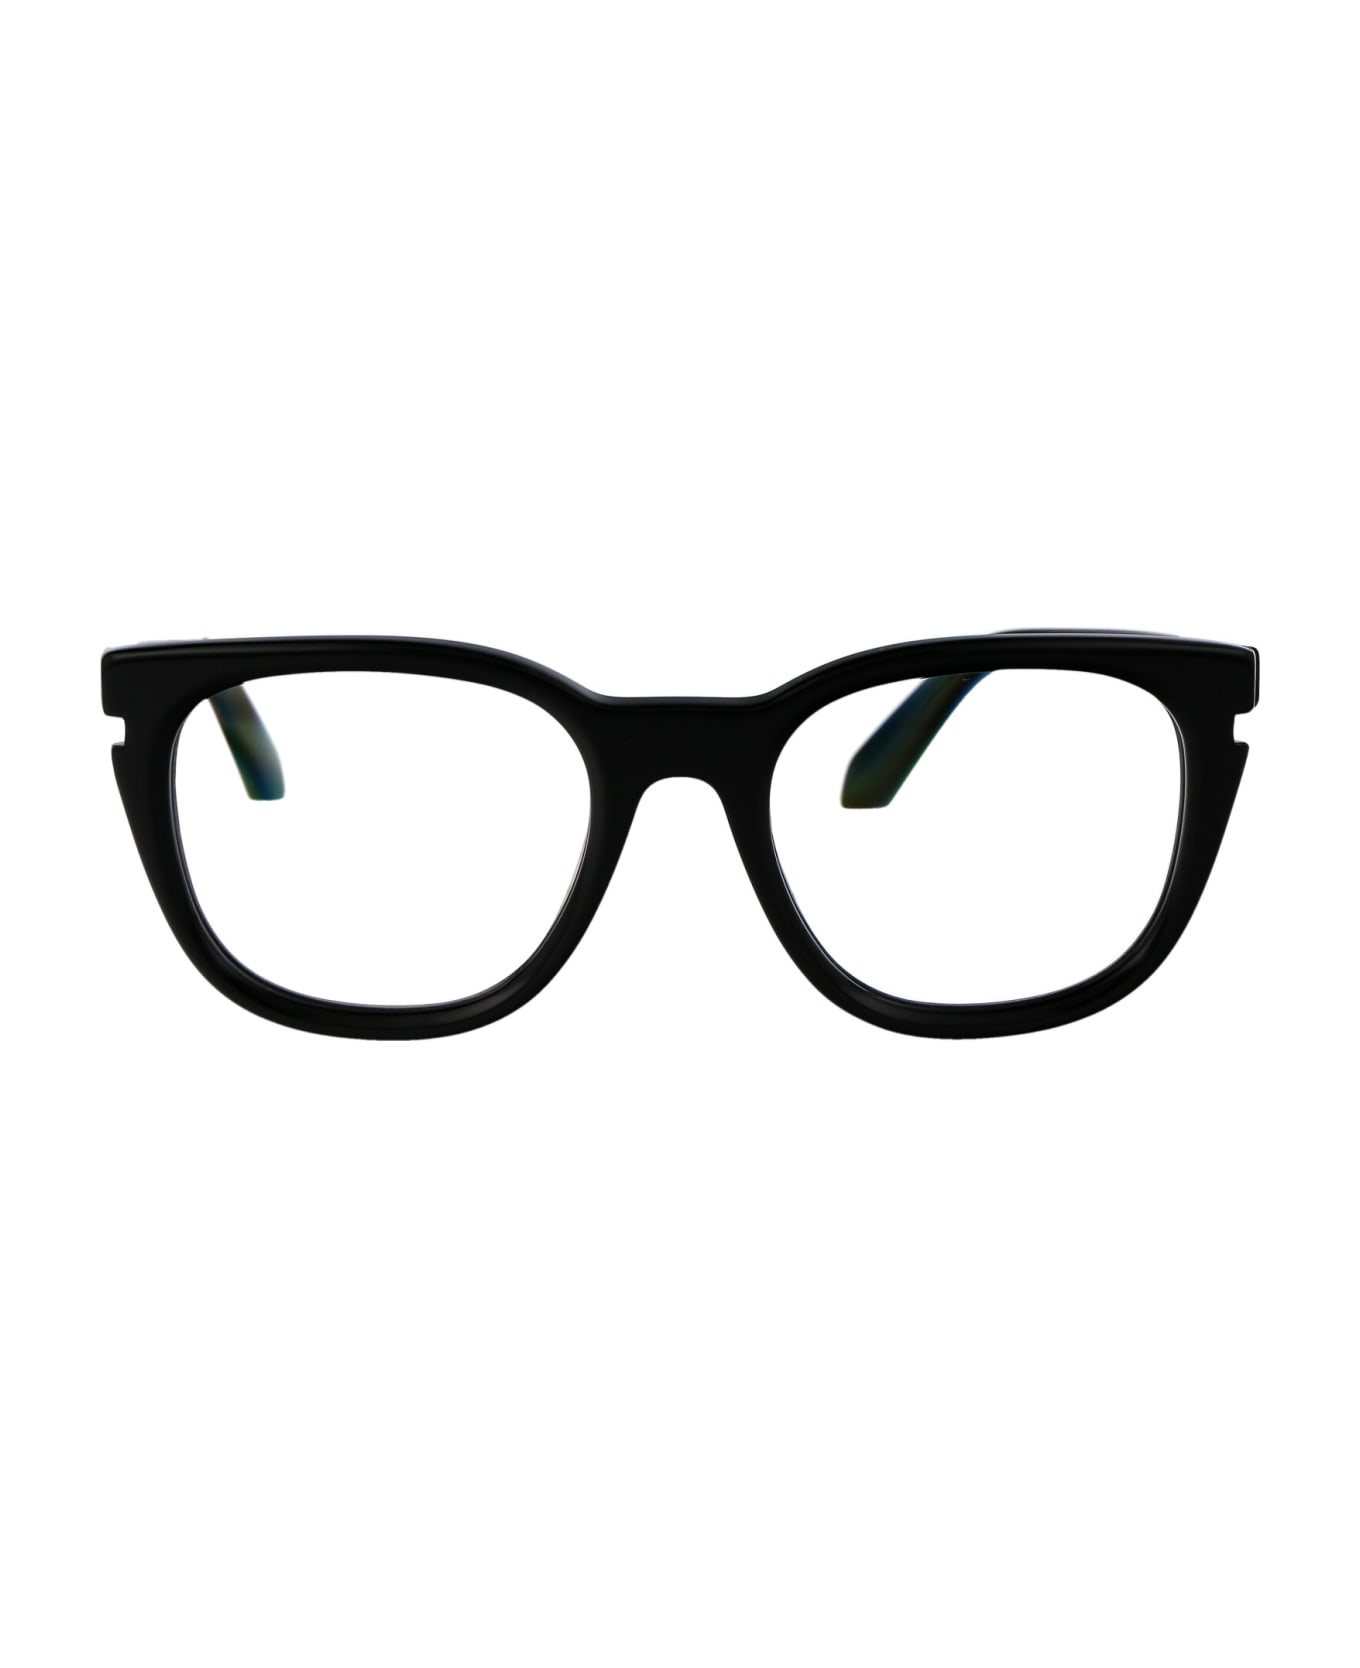 Off-White Optical Style 51 Glasses - 1000 BLACK アイウェア